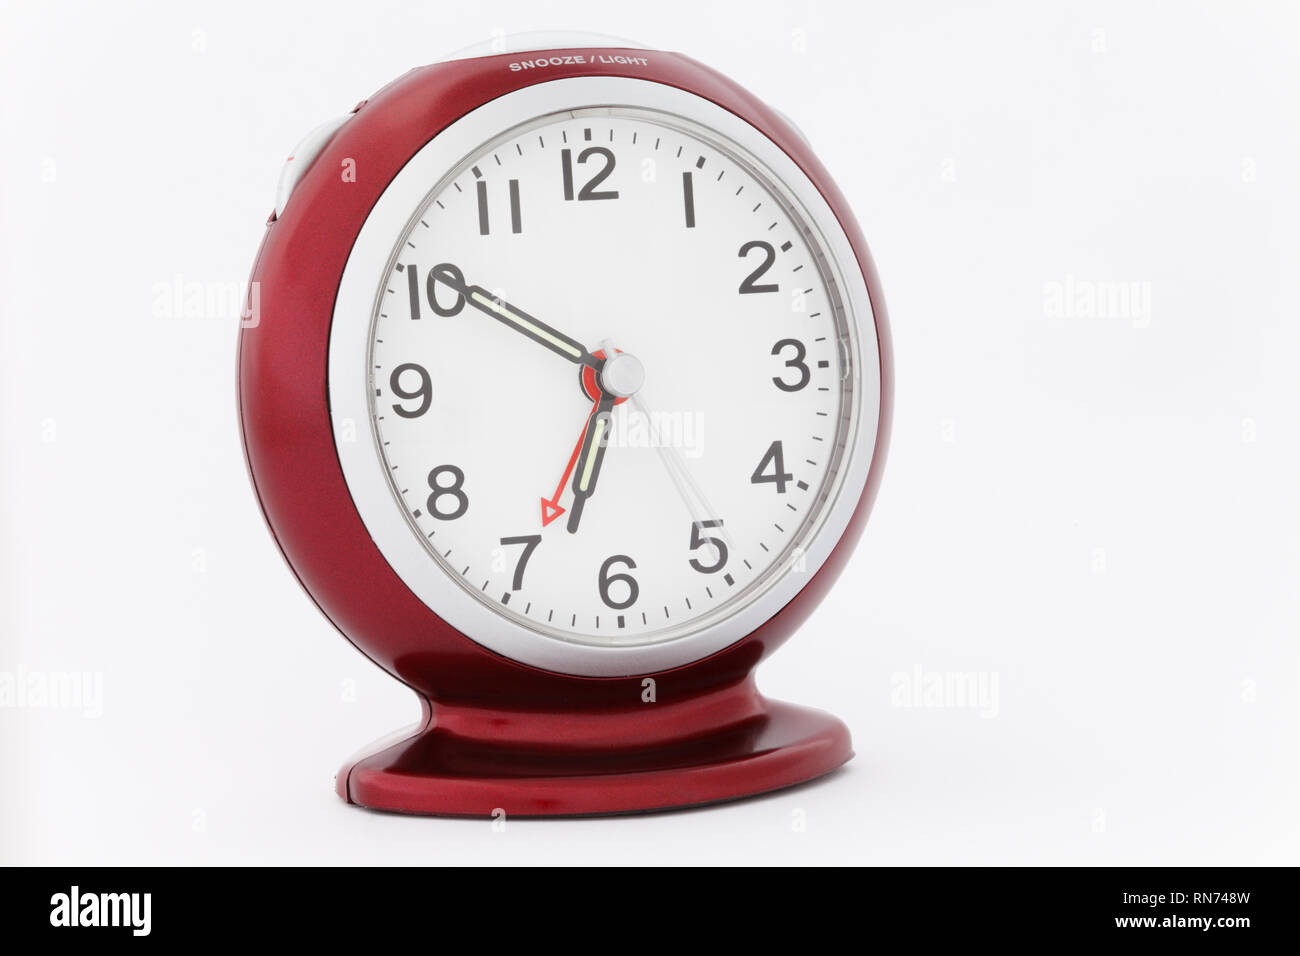 Roter analoger Wecker mit leuchtenden Zeigern, die die Zeit von zehn Minuten bis sieben kurz vor dem Weckton am Morgen anzeigen. Perfektes Timing-Konzept Stockfoto